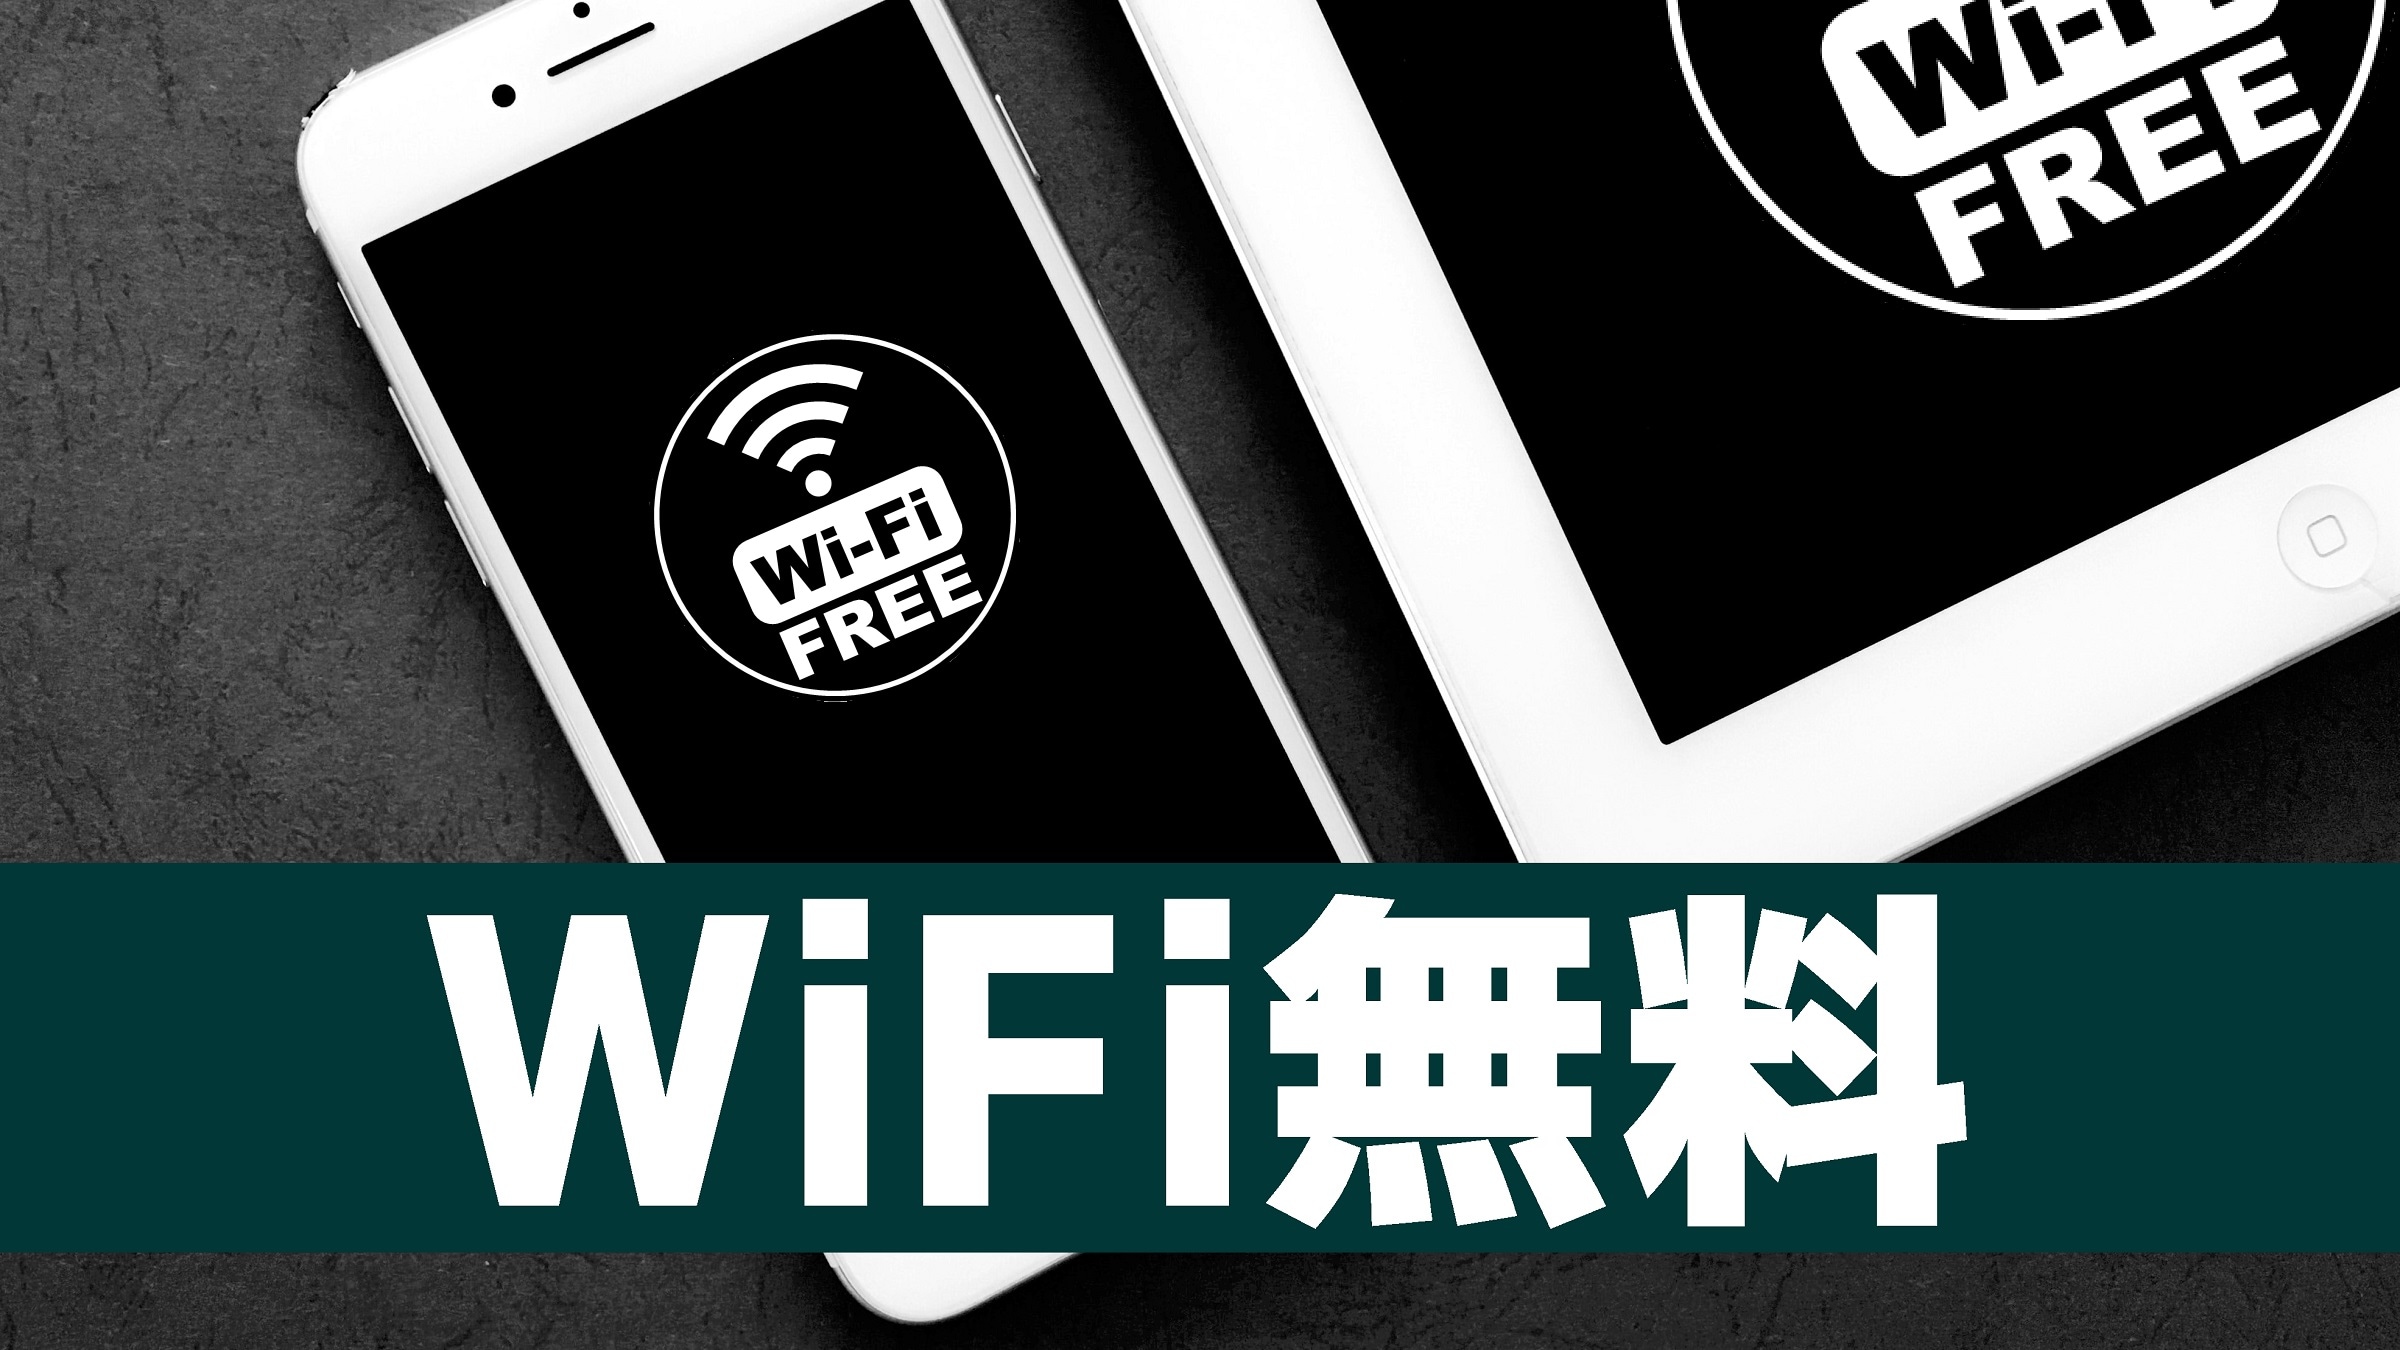 WIFI gratis di semua kamar / Wi-Fi gratis